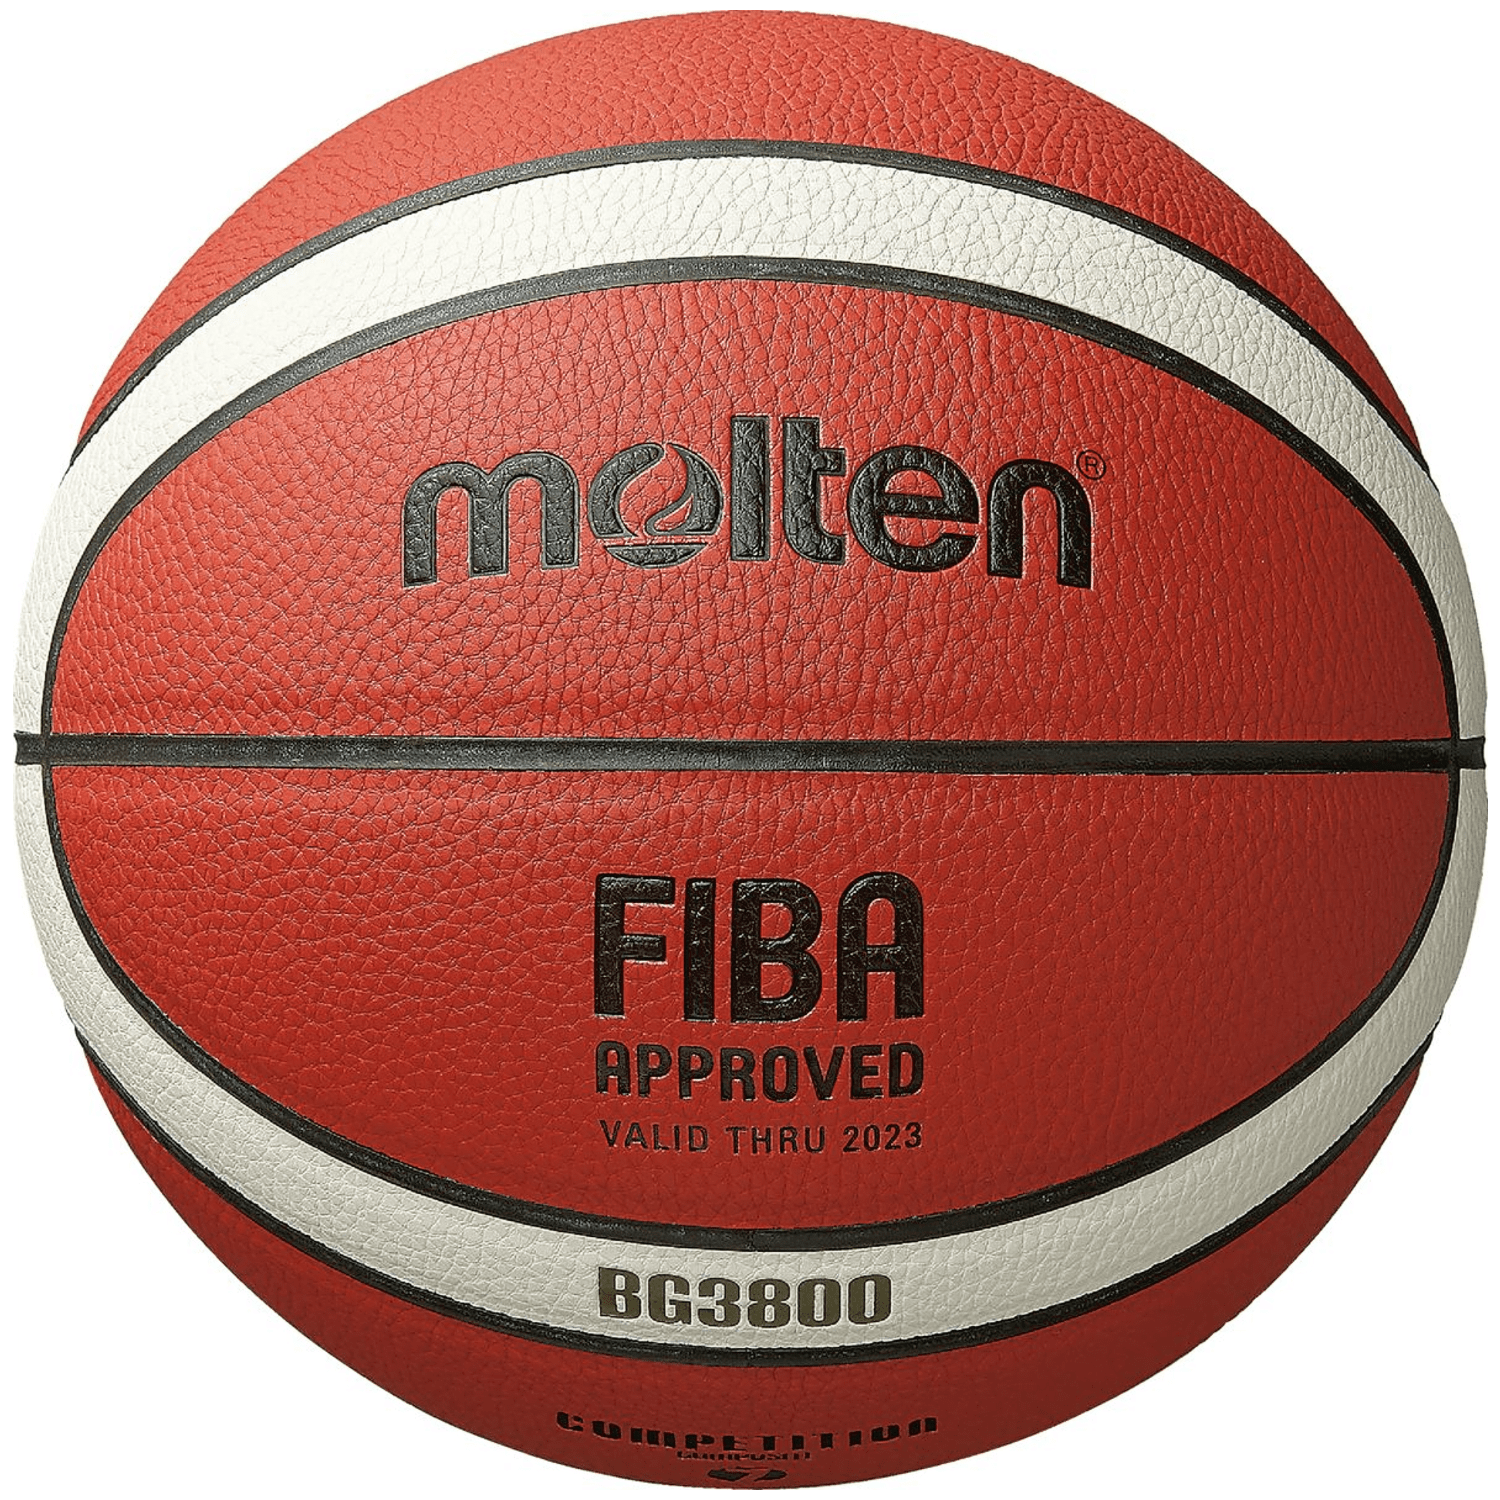 Molten B7G3800 Basketball